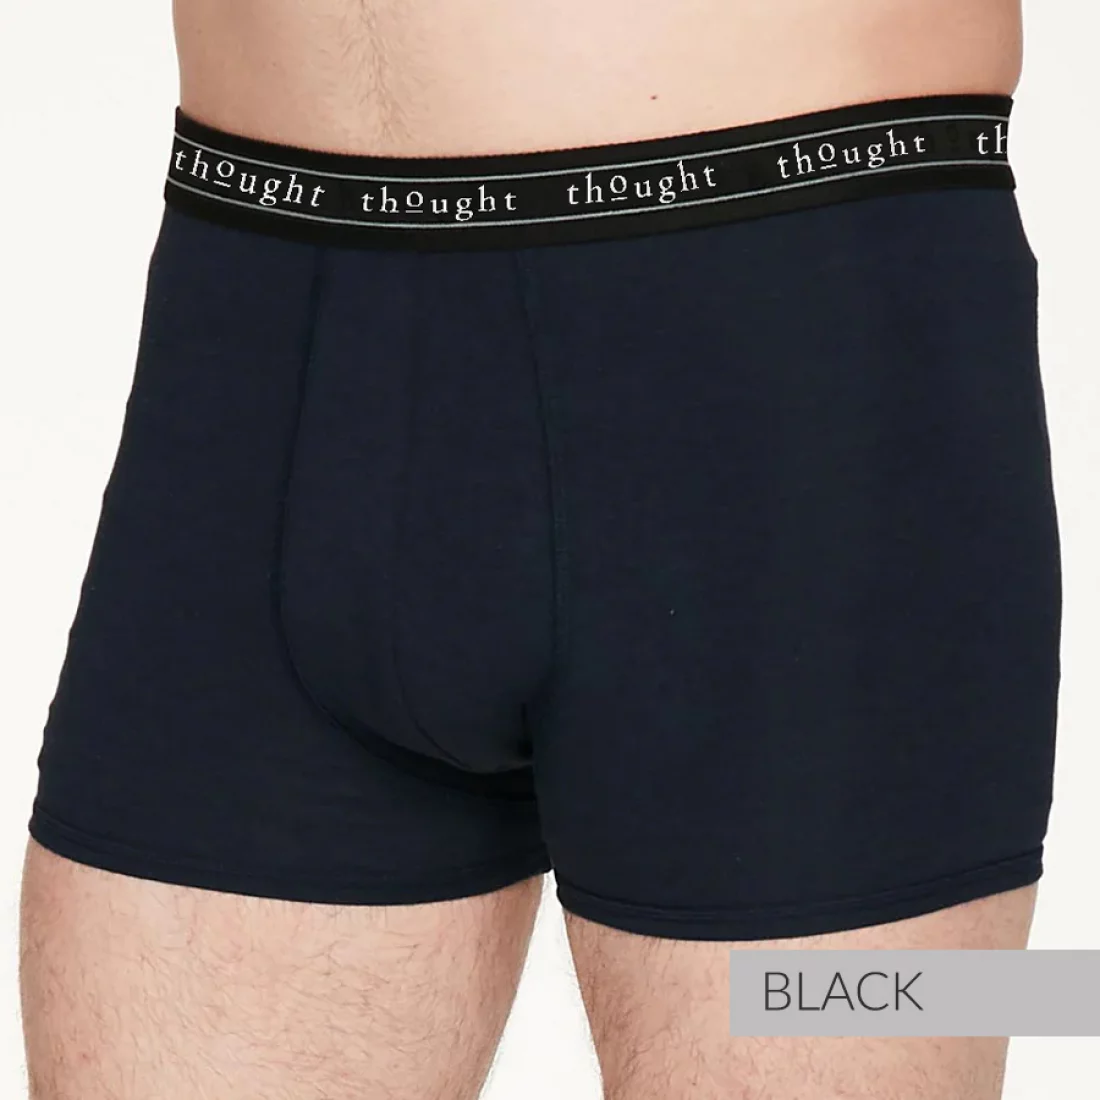 Men's Boxer Briefs Undies Underwear – Ask Me About My Trouser Trout